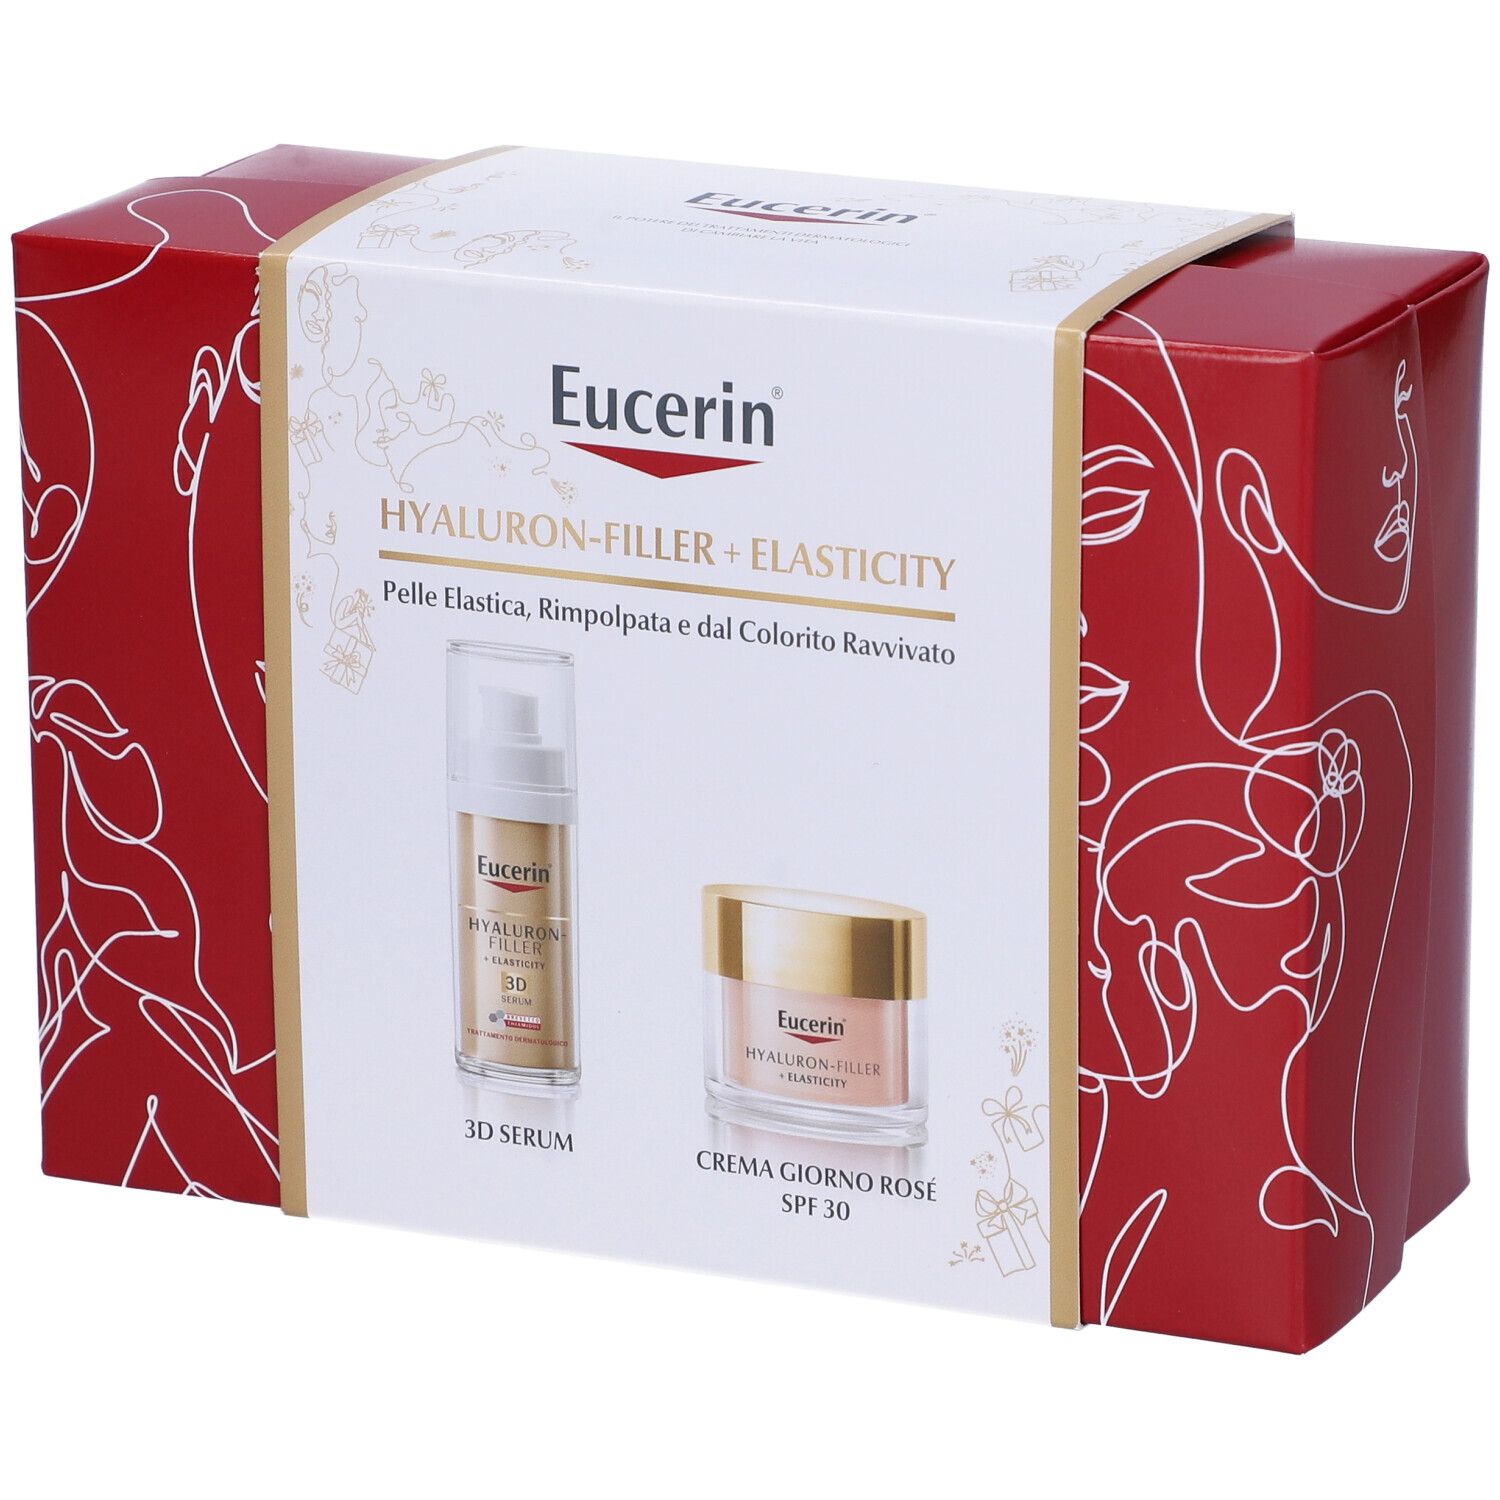 Eucerin Box Hyaluron-Filler+Elasticity 3D Serum + Crema Giorno Rosé